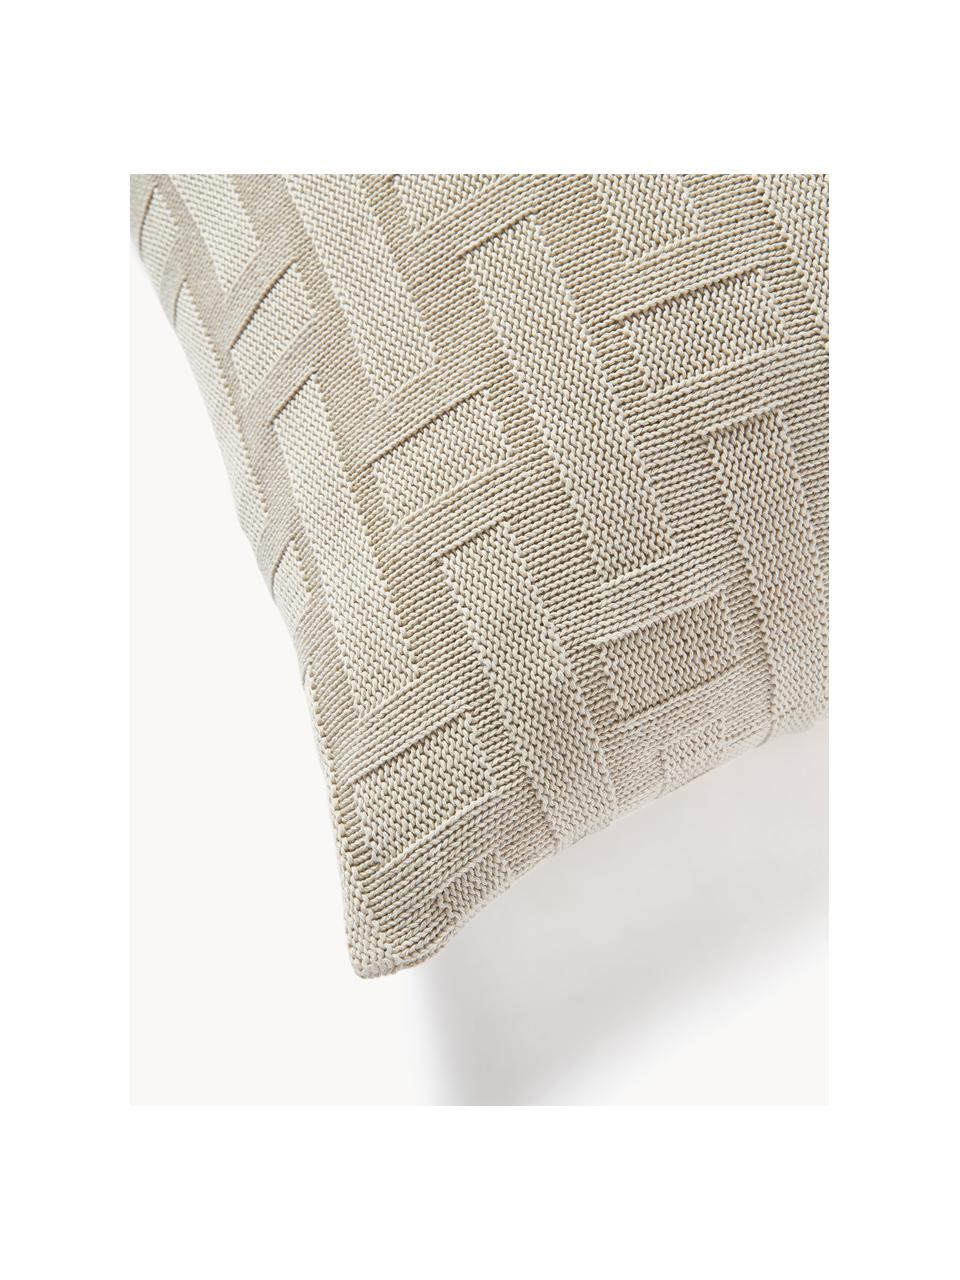 Copricuscino in cotone a maglia Gwen, 100% cotone, Beige chiaro, Larg. 50 x Lung. 50 cm